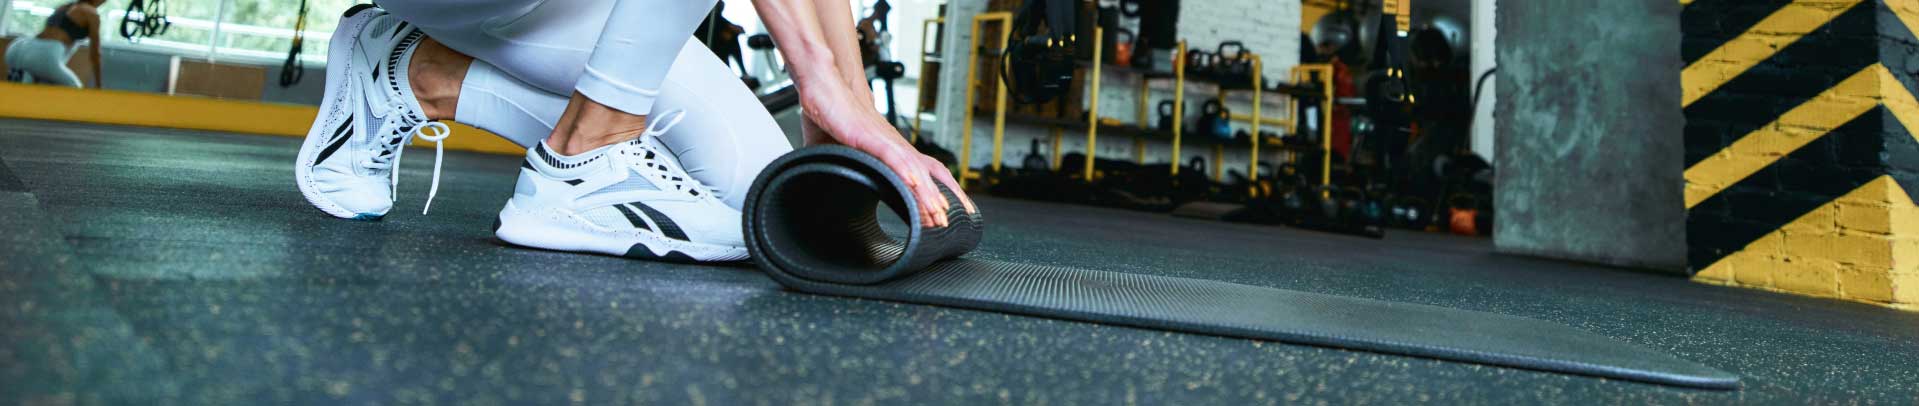 VersaRUBBER® Flooring in Fitness Areas